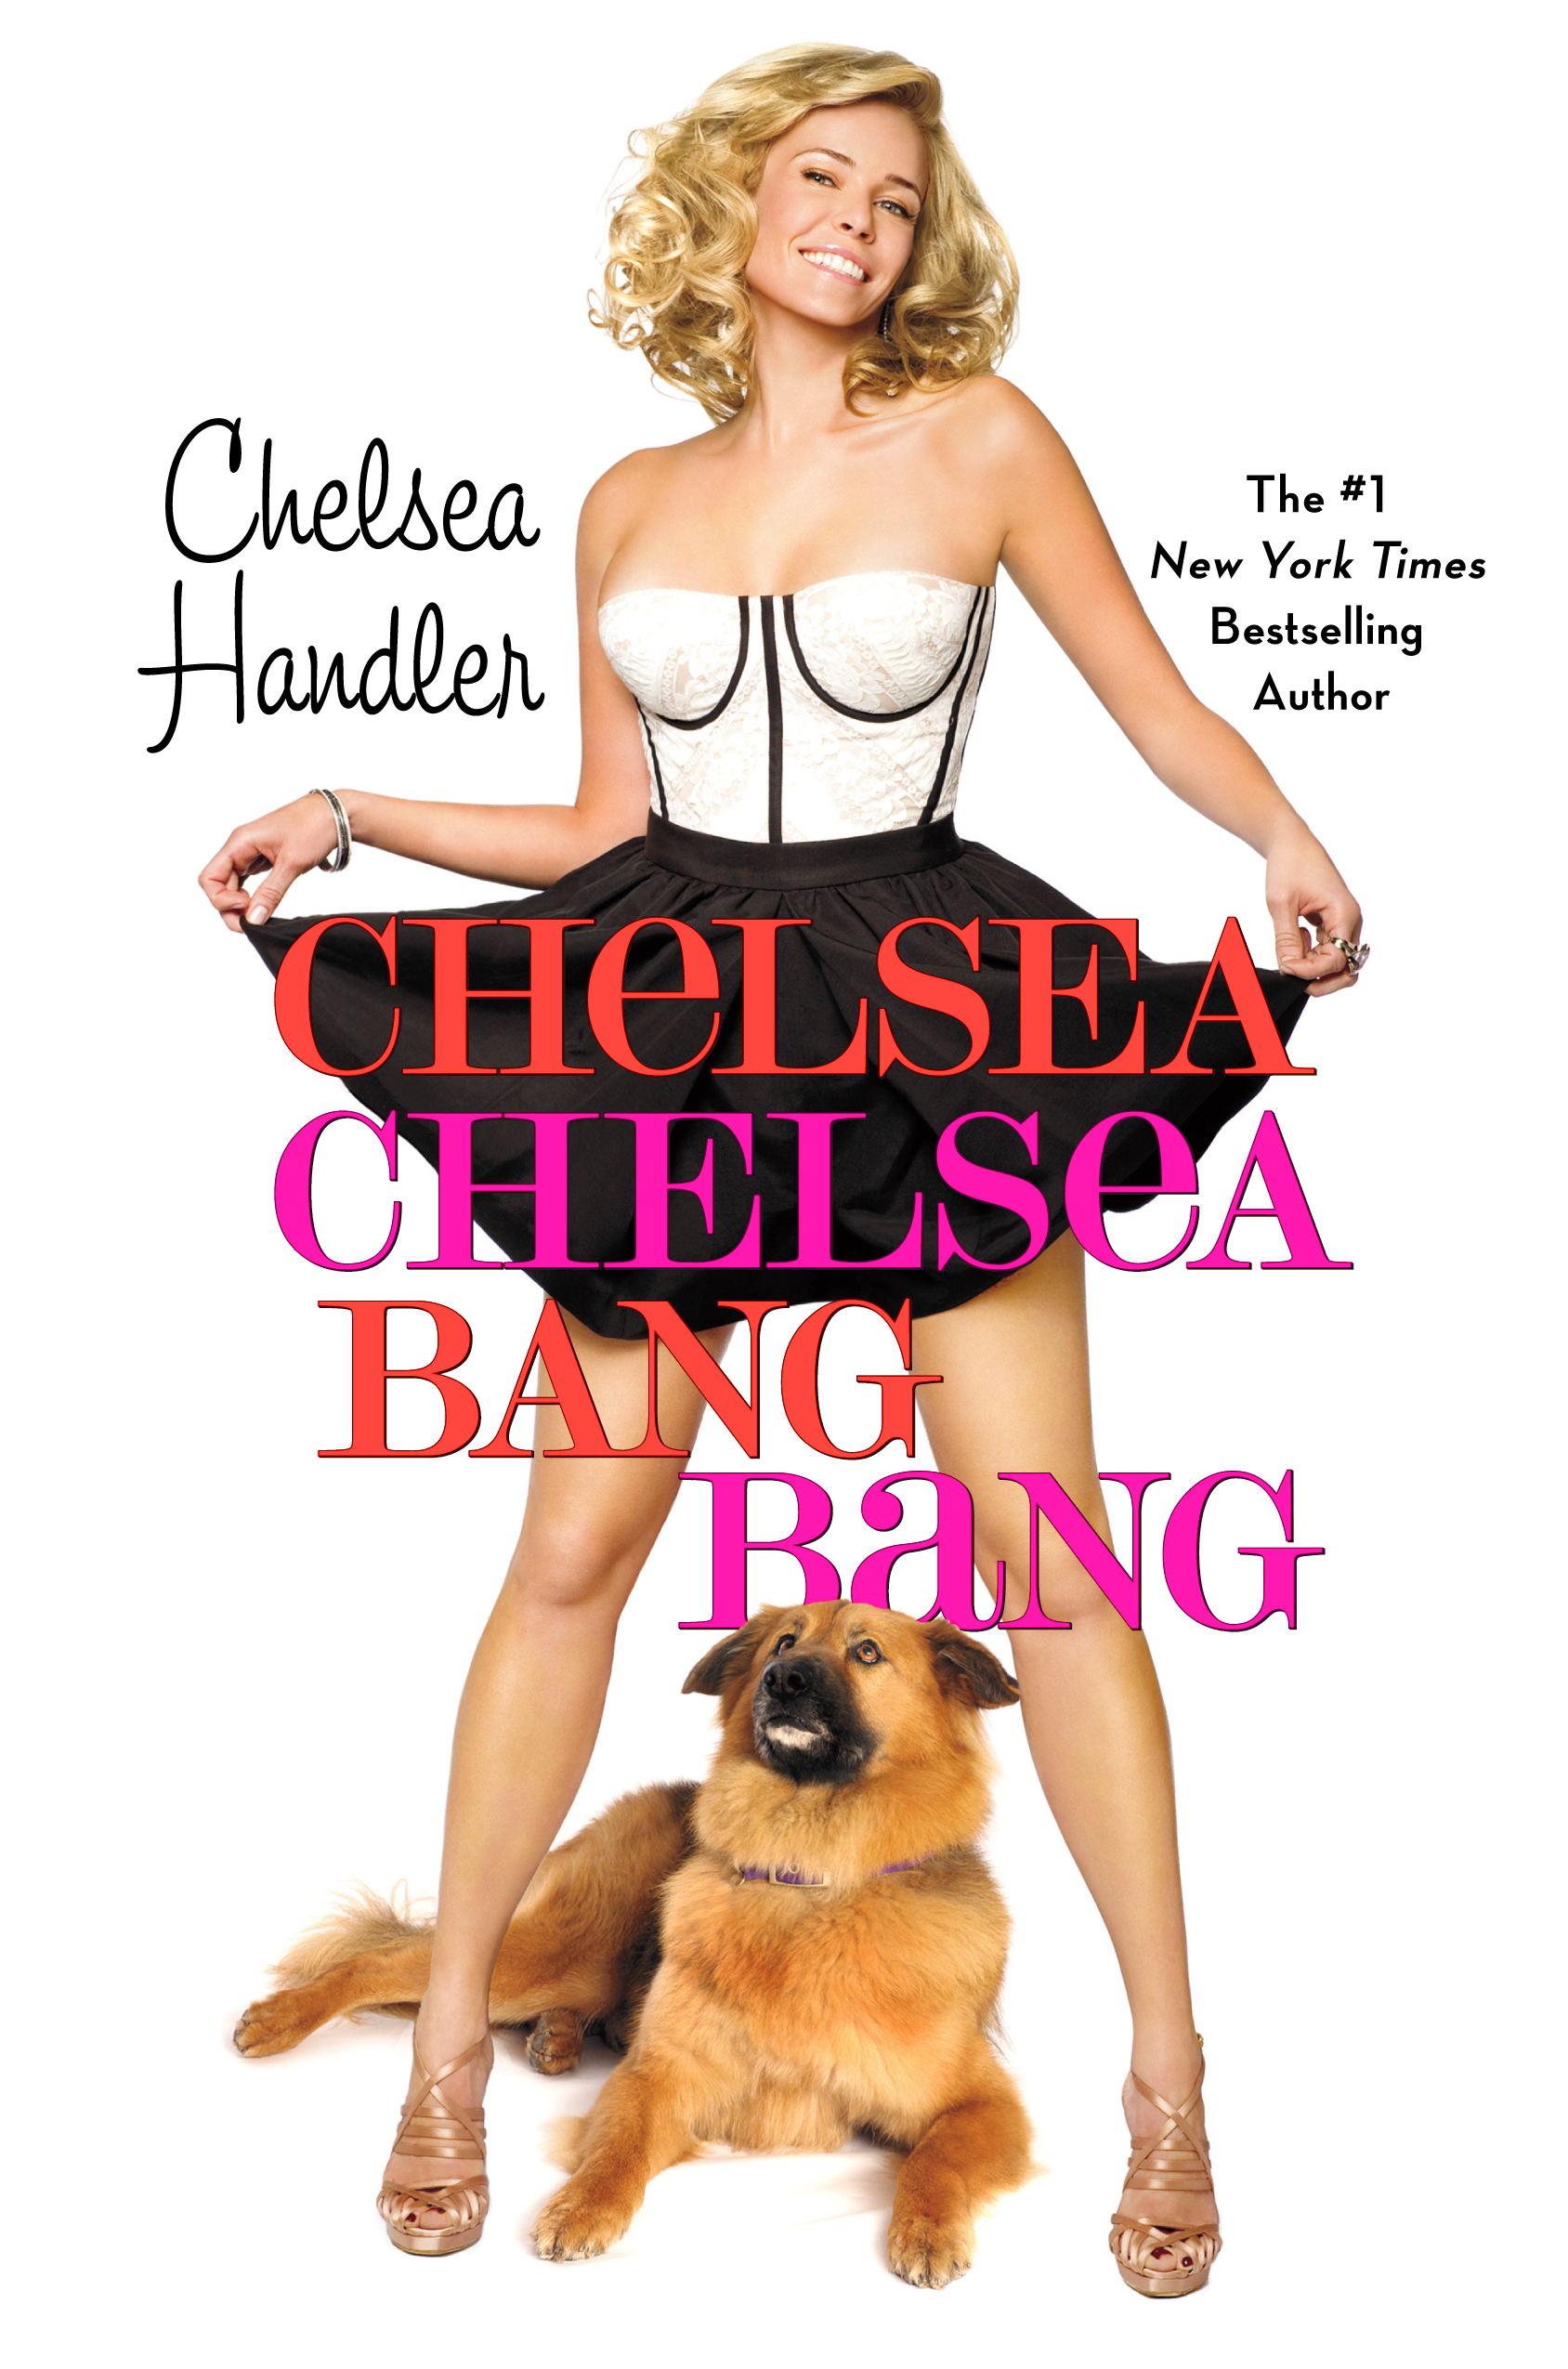  Book Review: “Chelsea Chelsea Bang Bang” -Chelsea Handler (2010)